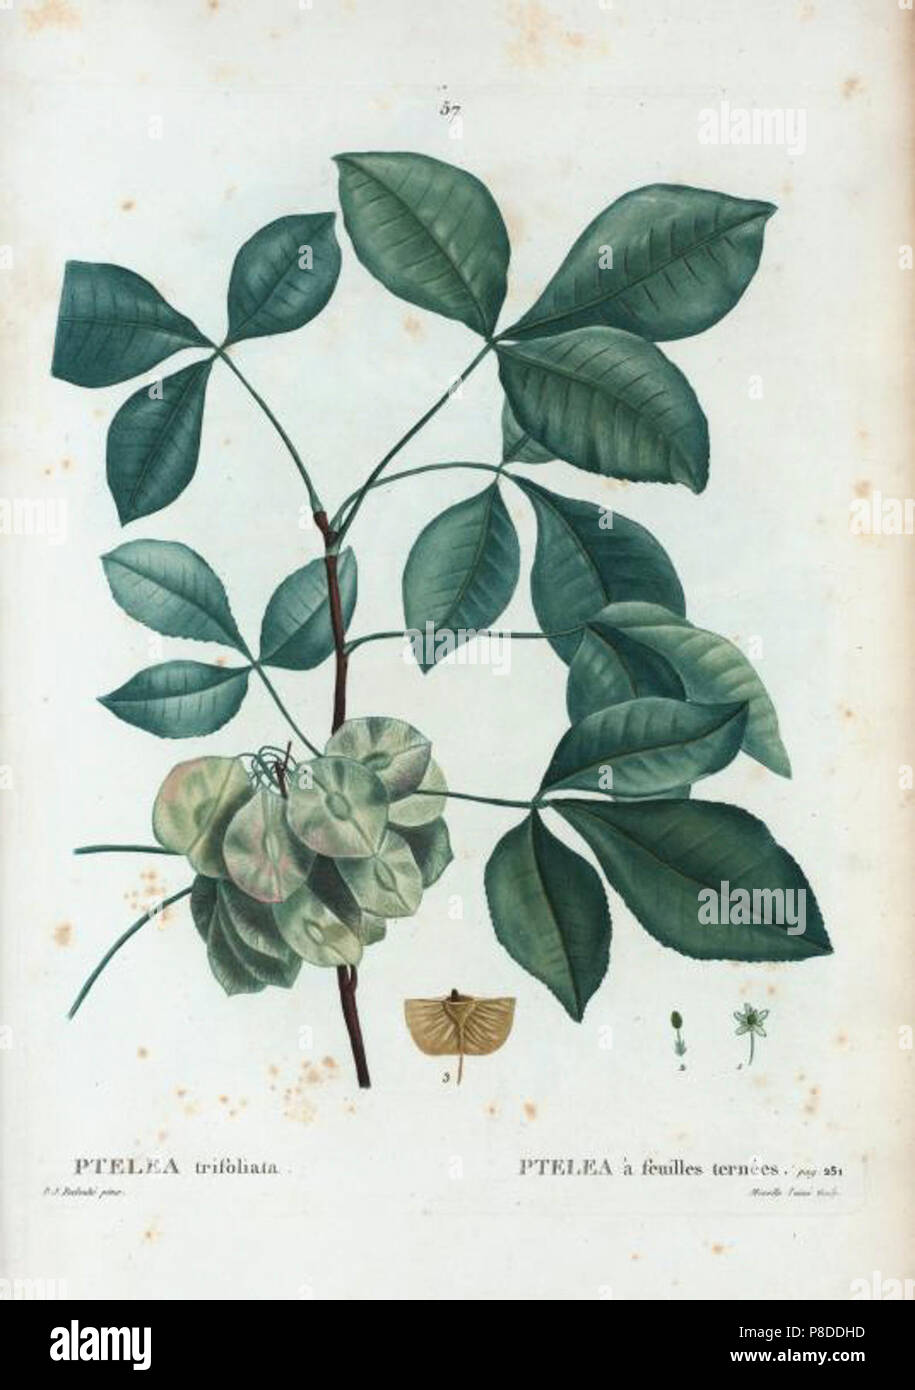 57 Ptelea trifoliata par Pierre-Joseph Redouté. Stock Photo